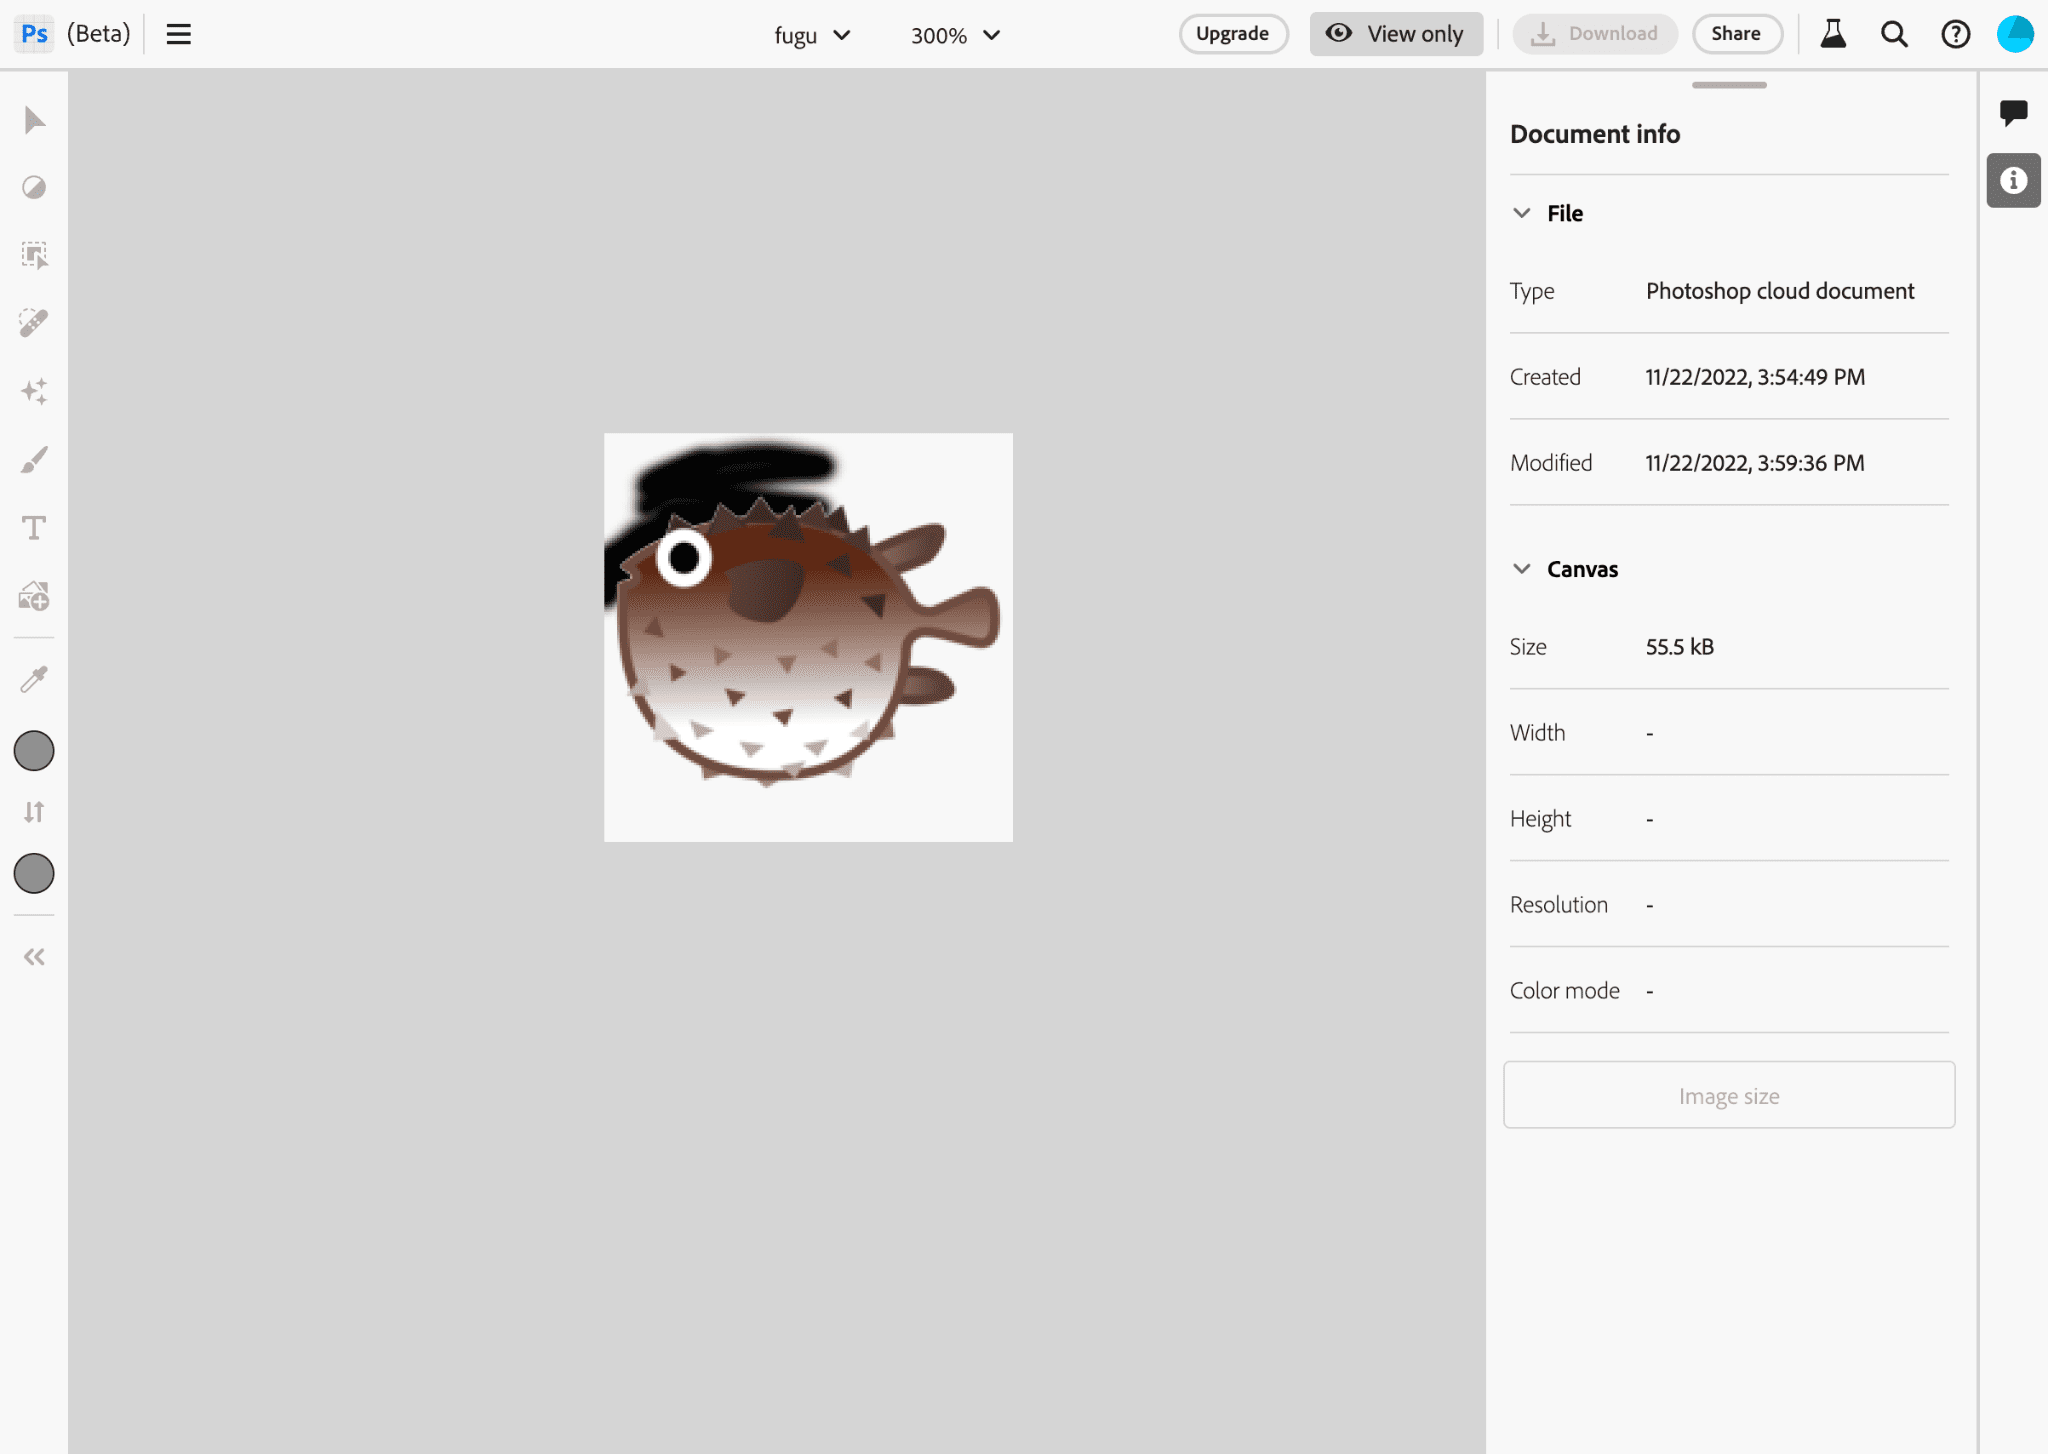 La app de Photoshop mientras editas una imagen del logotipo de Project Fugu.